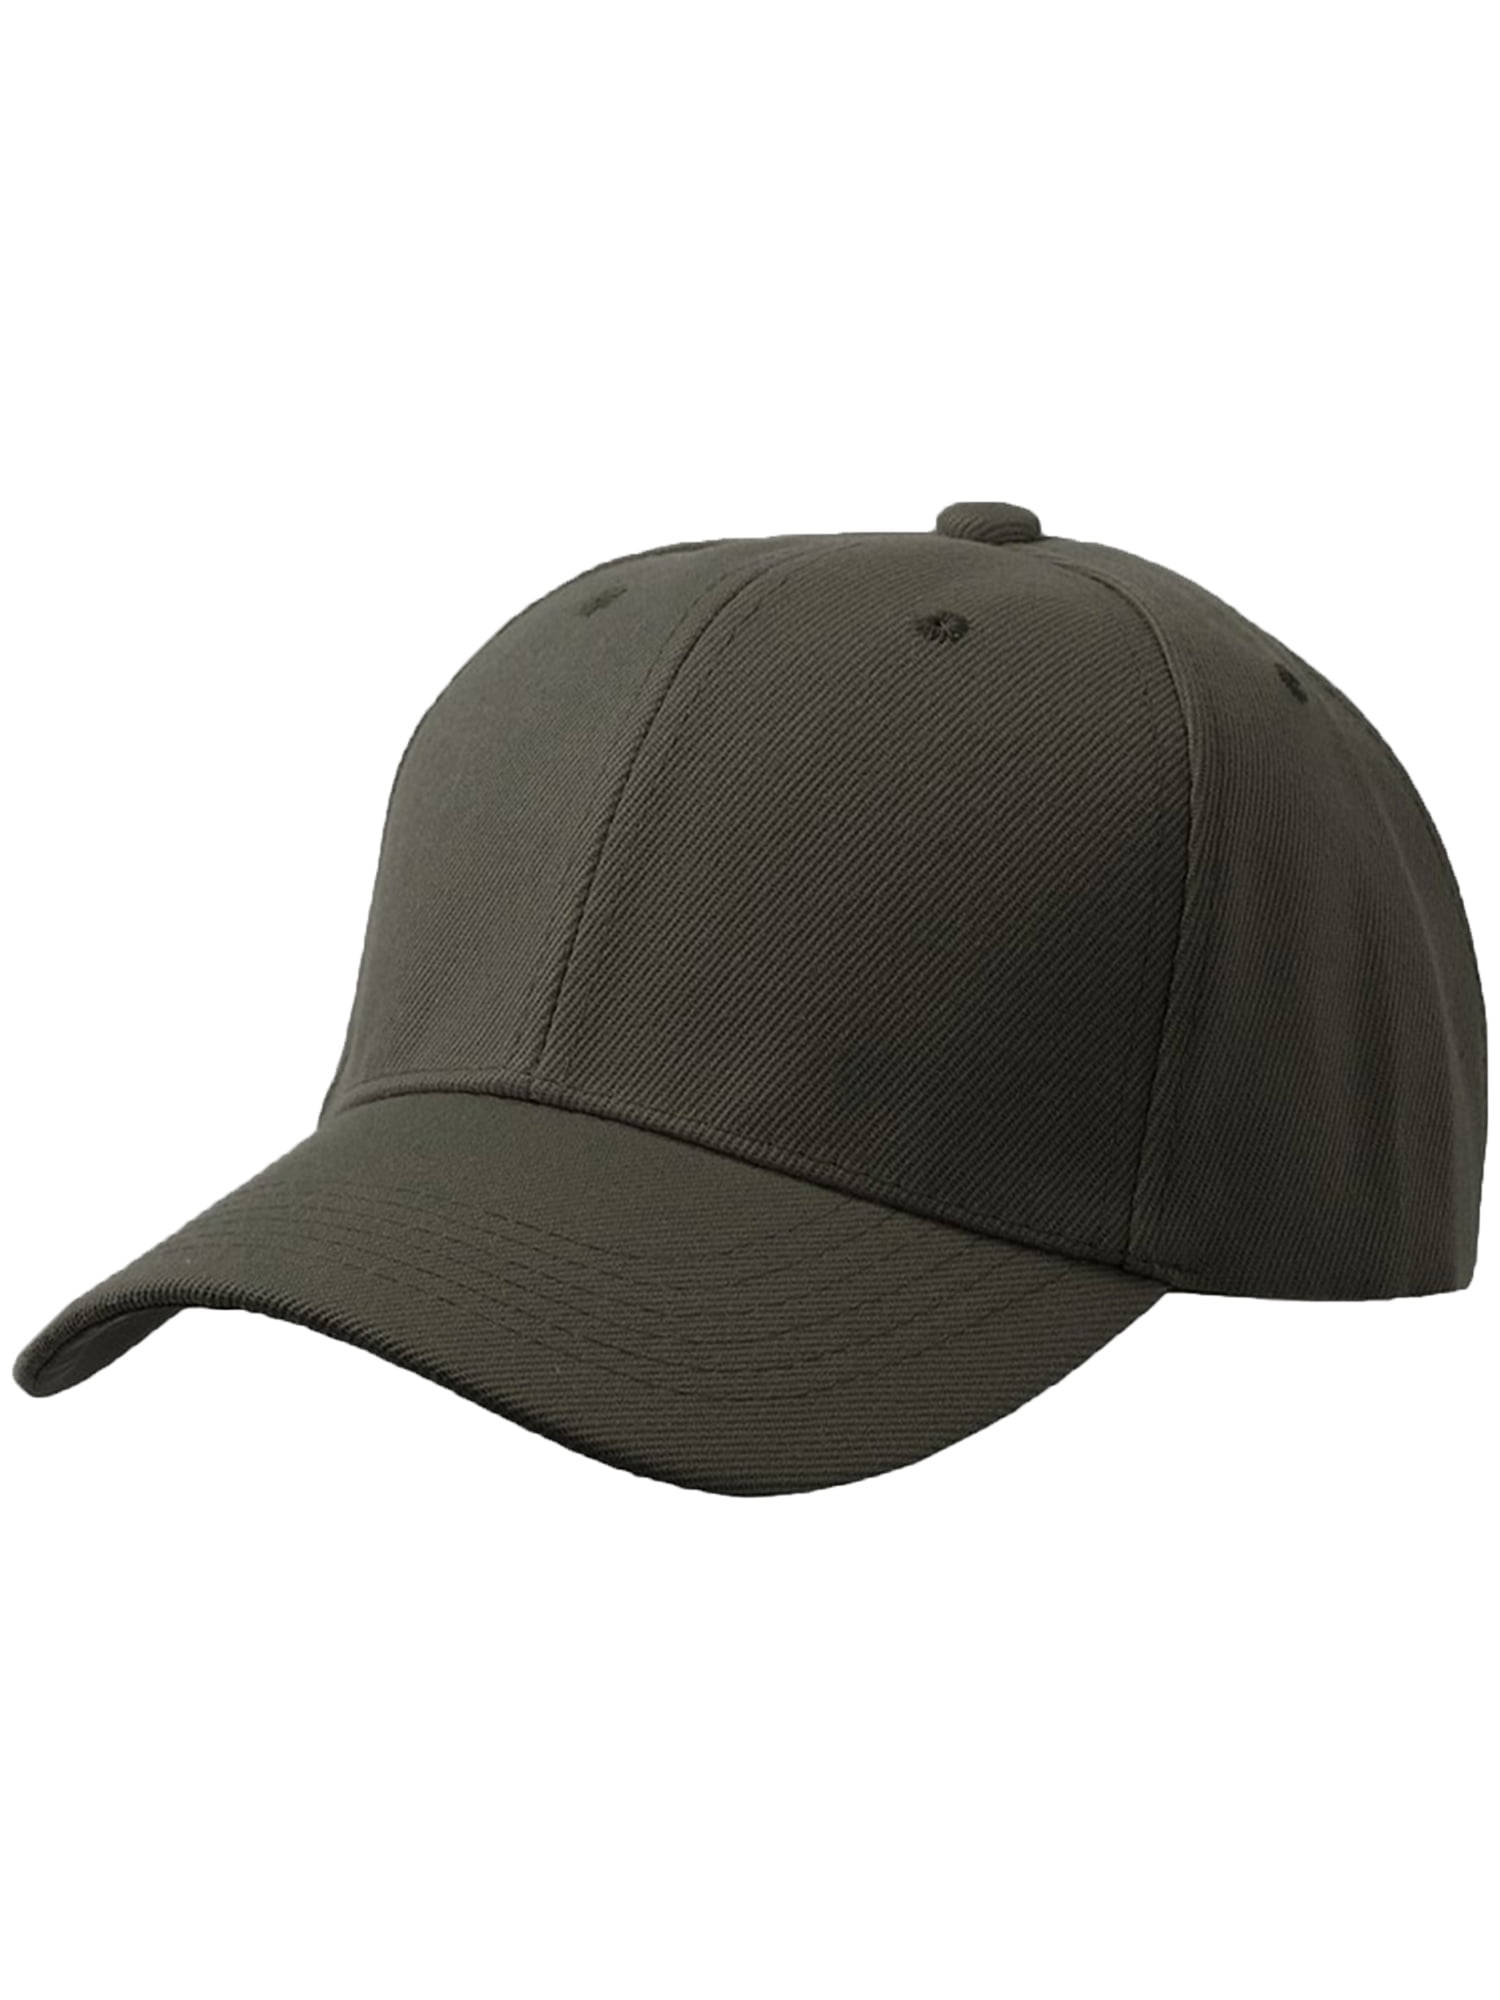 Hat-3P Curved Baseball Adjustable Cap Visor Plain Men\'s Olive Black Charcoal